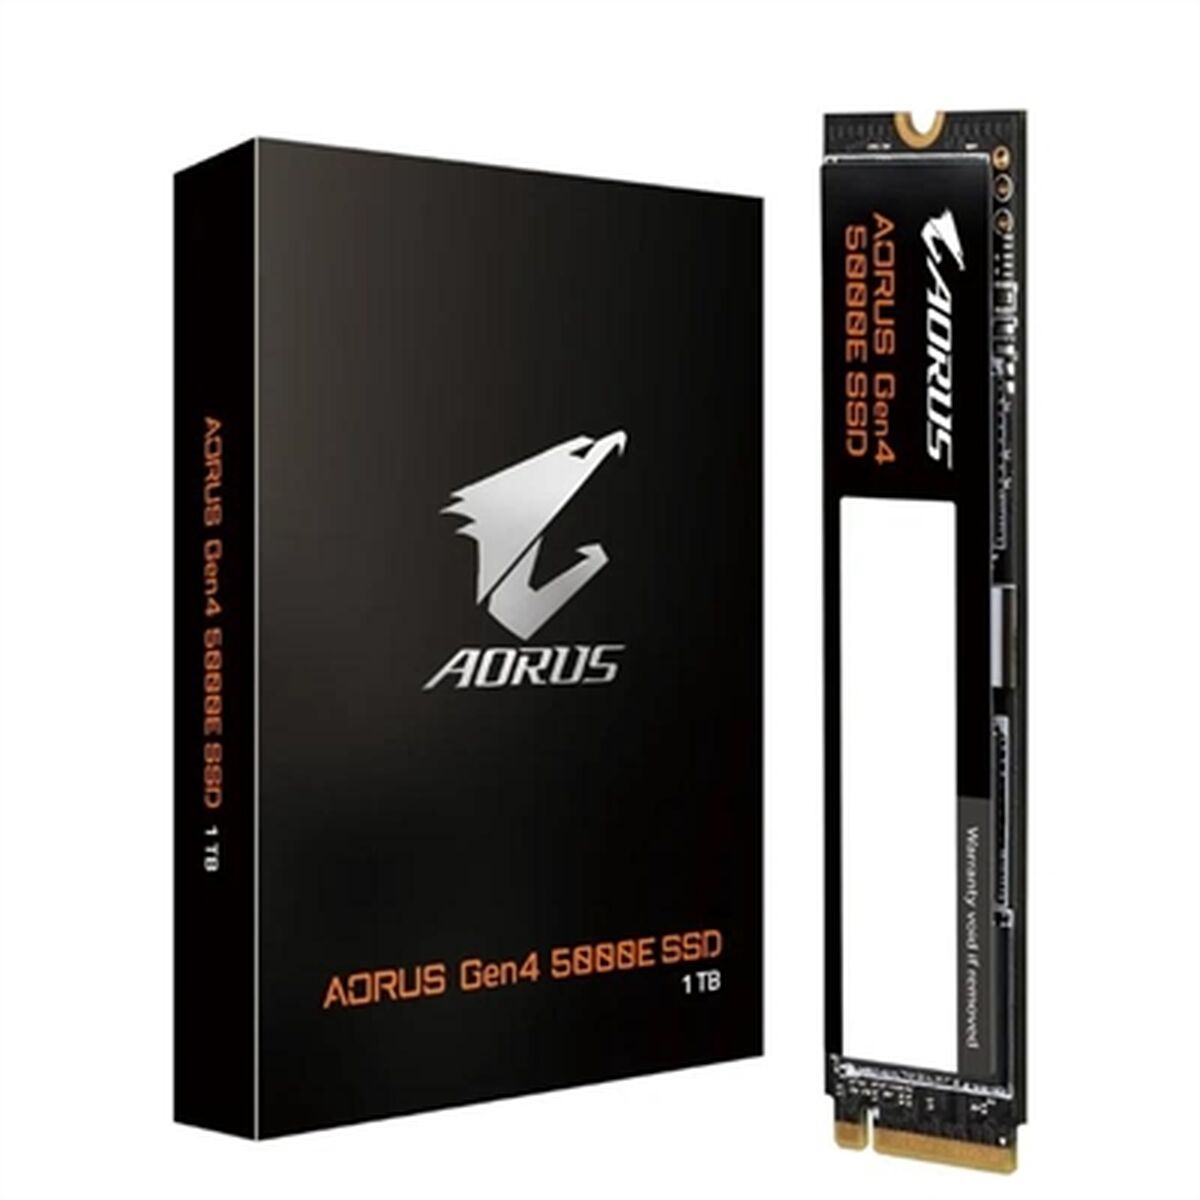 Harddisk Gigabyte AORUS Gen4 5000E 1 TB SSD